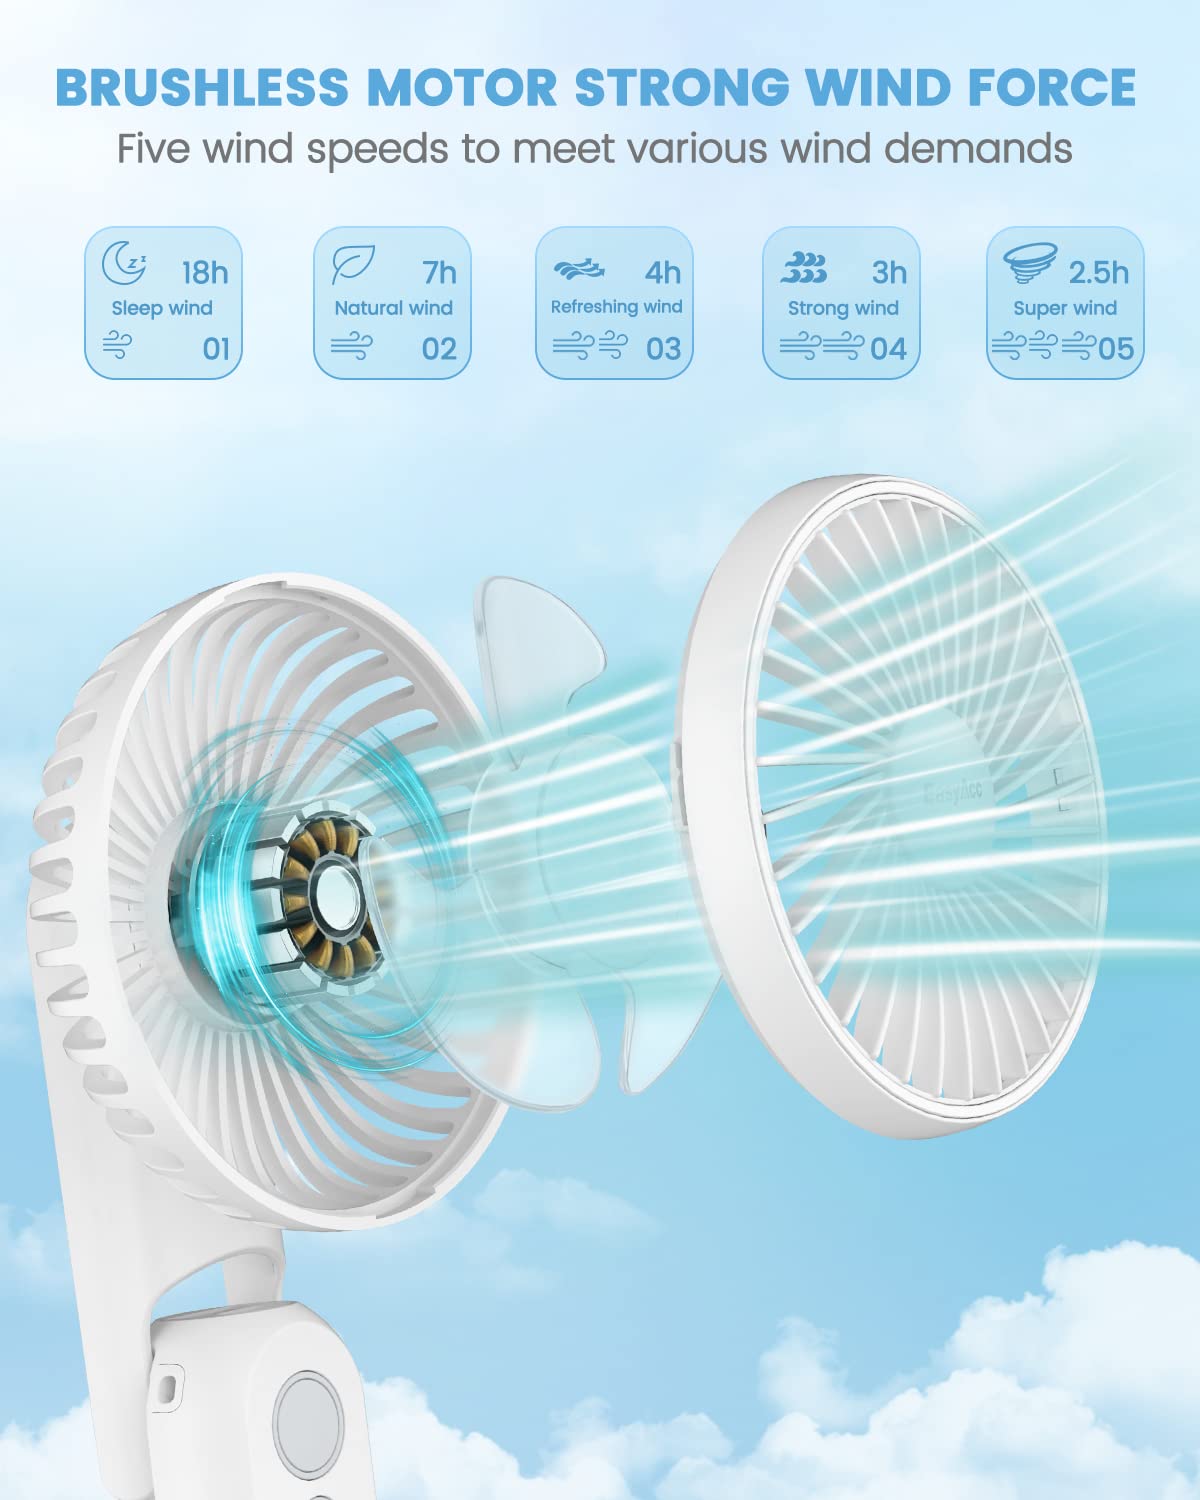 EasyAcc Portable Hand Held Fan, Ultra Quiet 5 Speed Personal Fan, LED Dispay USB C Rechargeable Handheld Fan, 180° Foldable Small Desk Fan, Electric Cooling Fan&PowerBank for Office Home Travel…